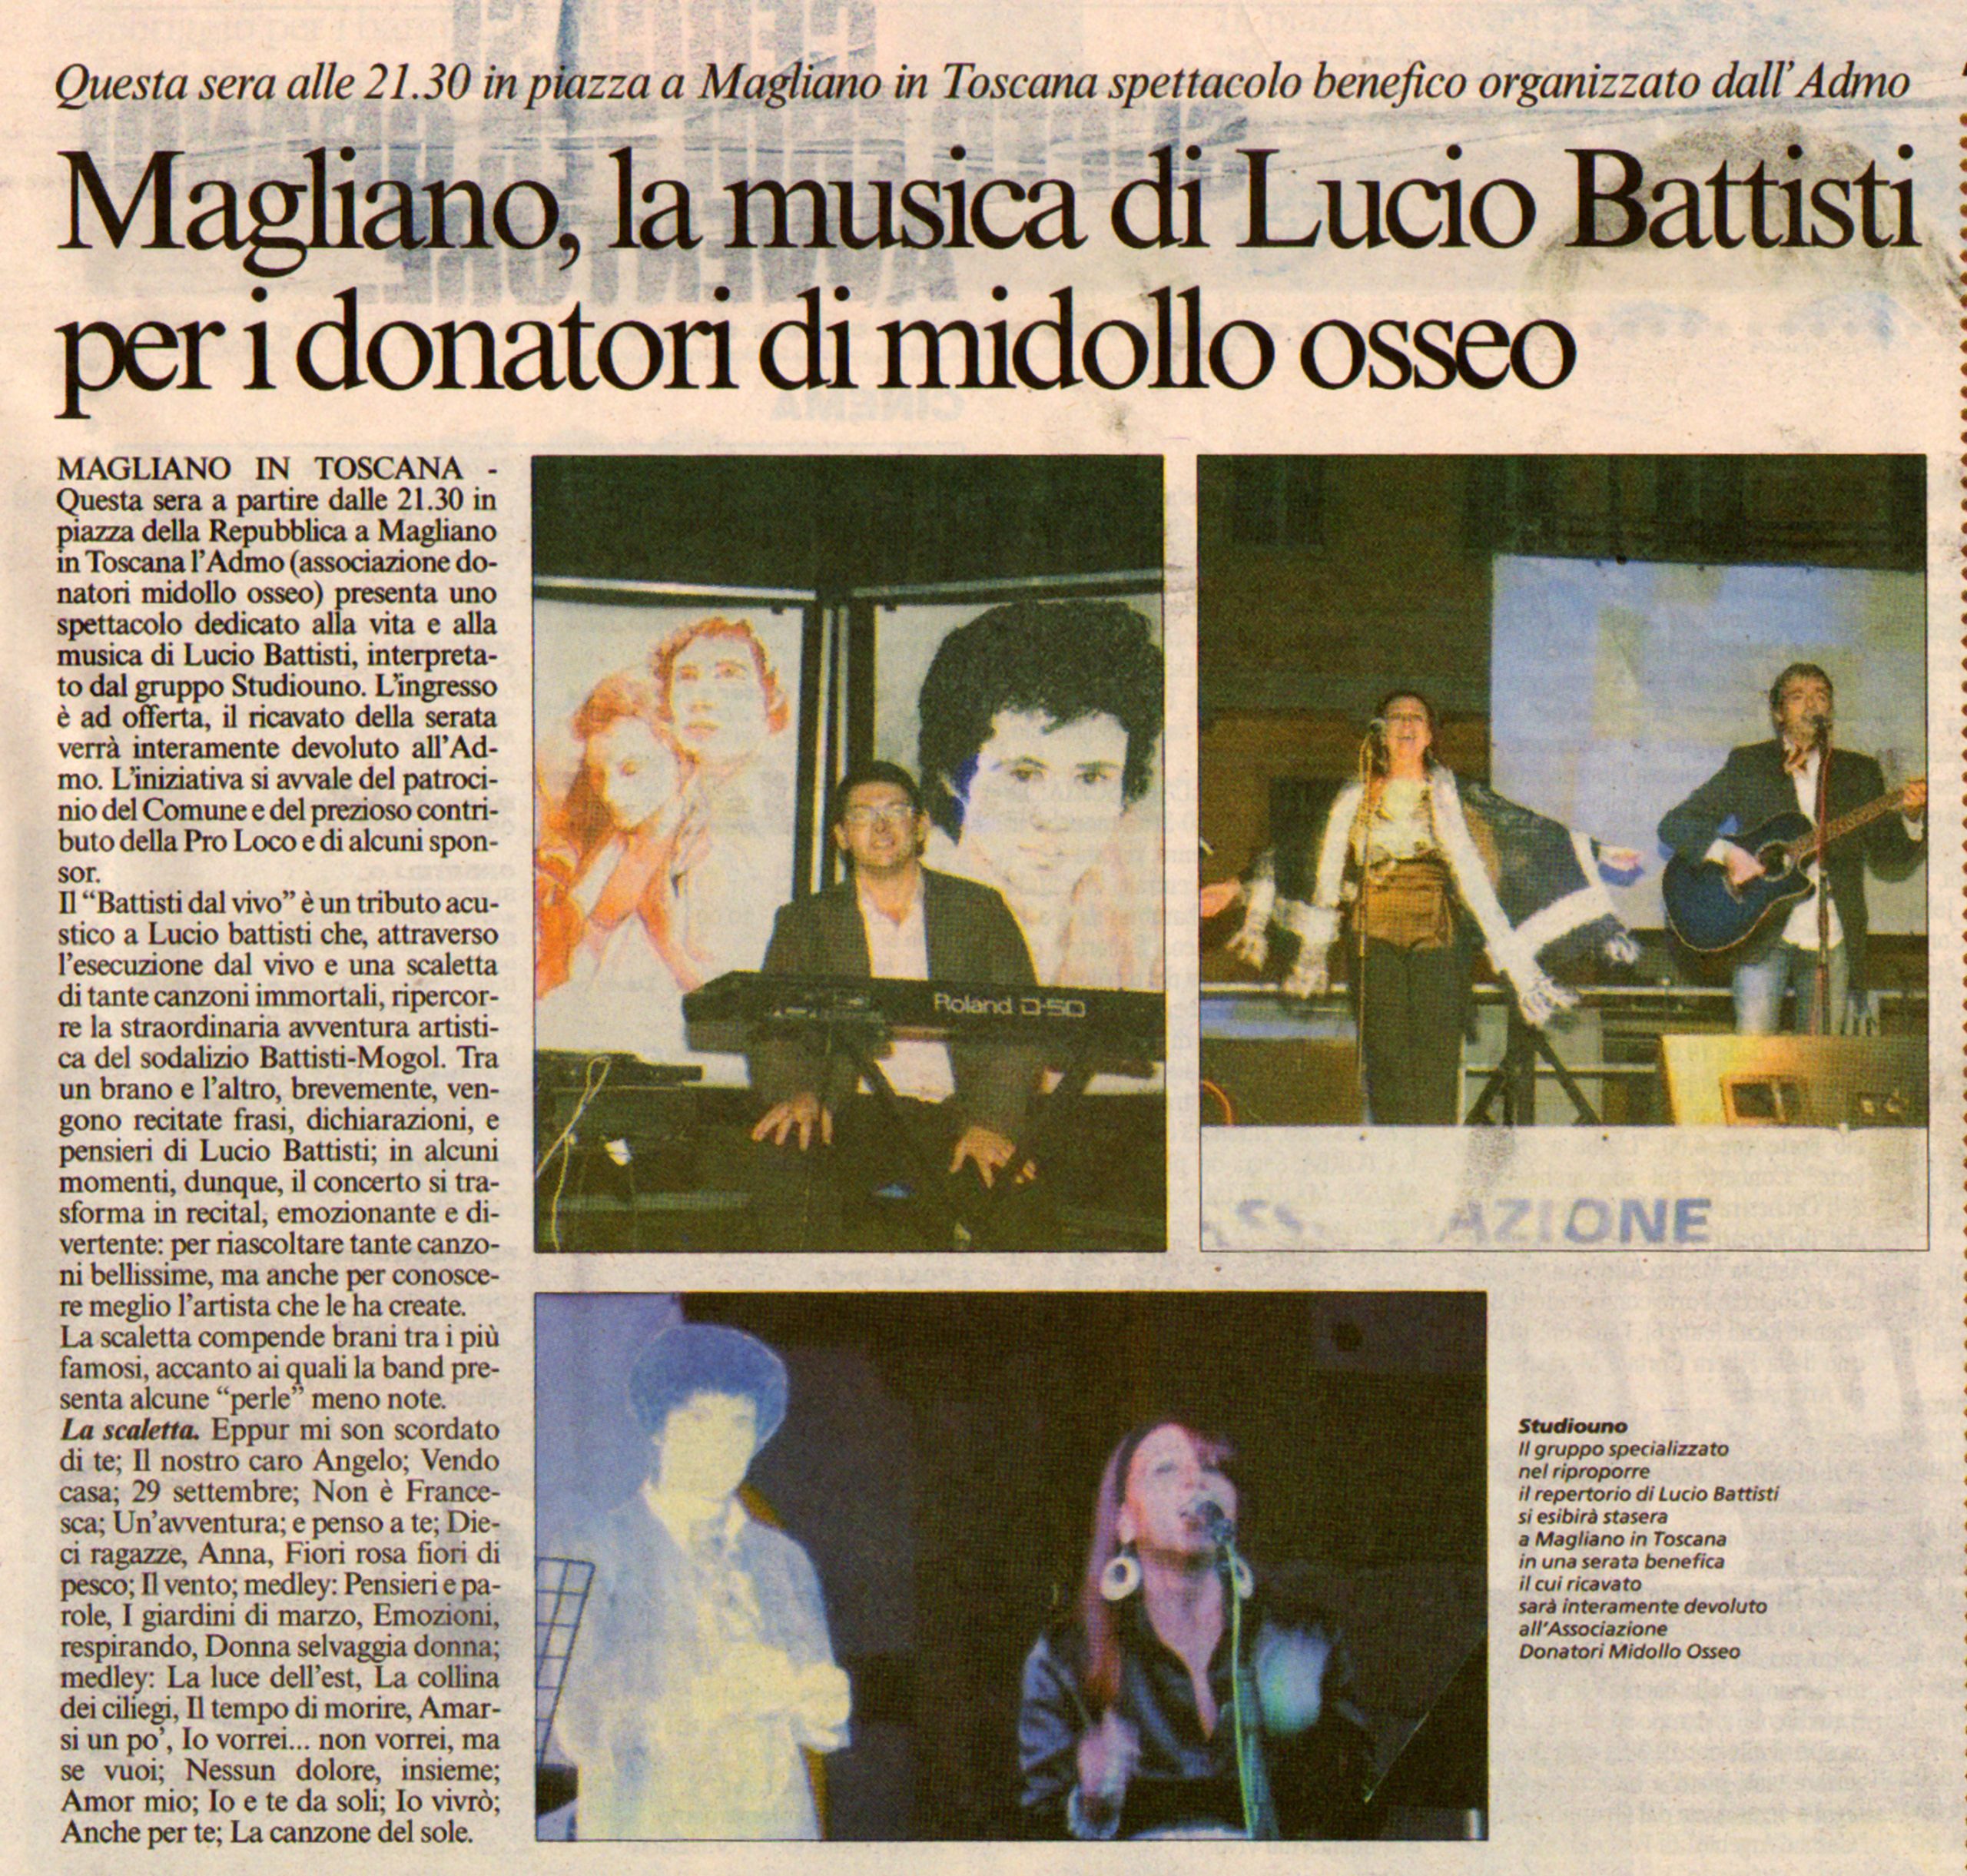 Magliano, la musica di Lucio Battisti per i donatori di midollo osseo.